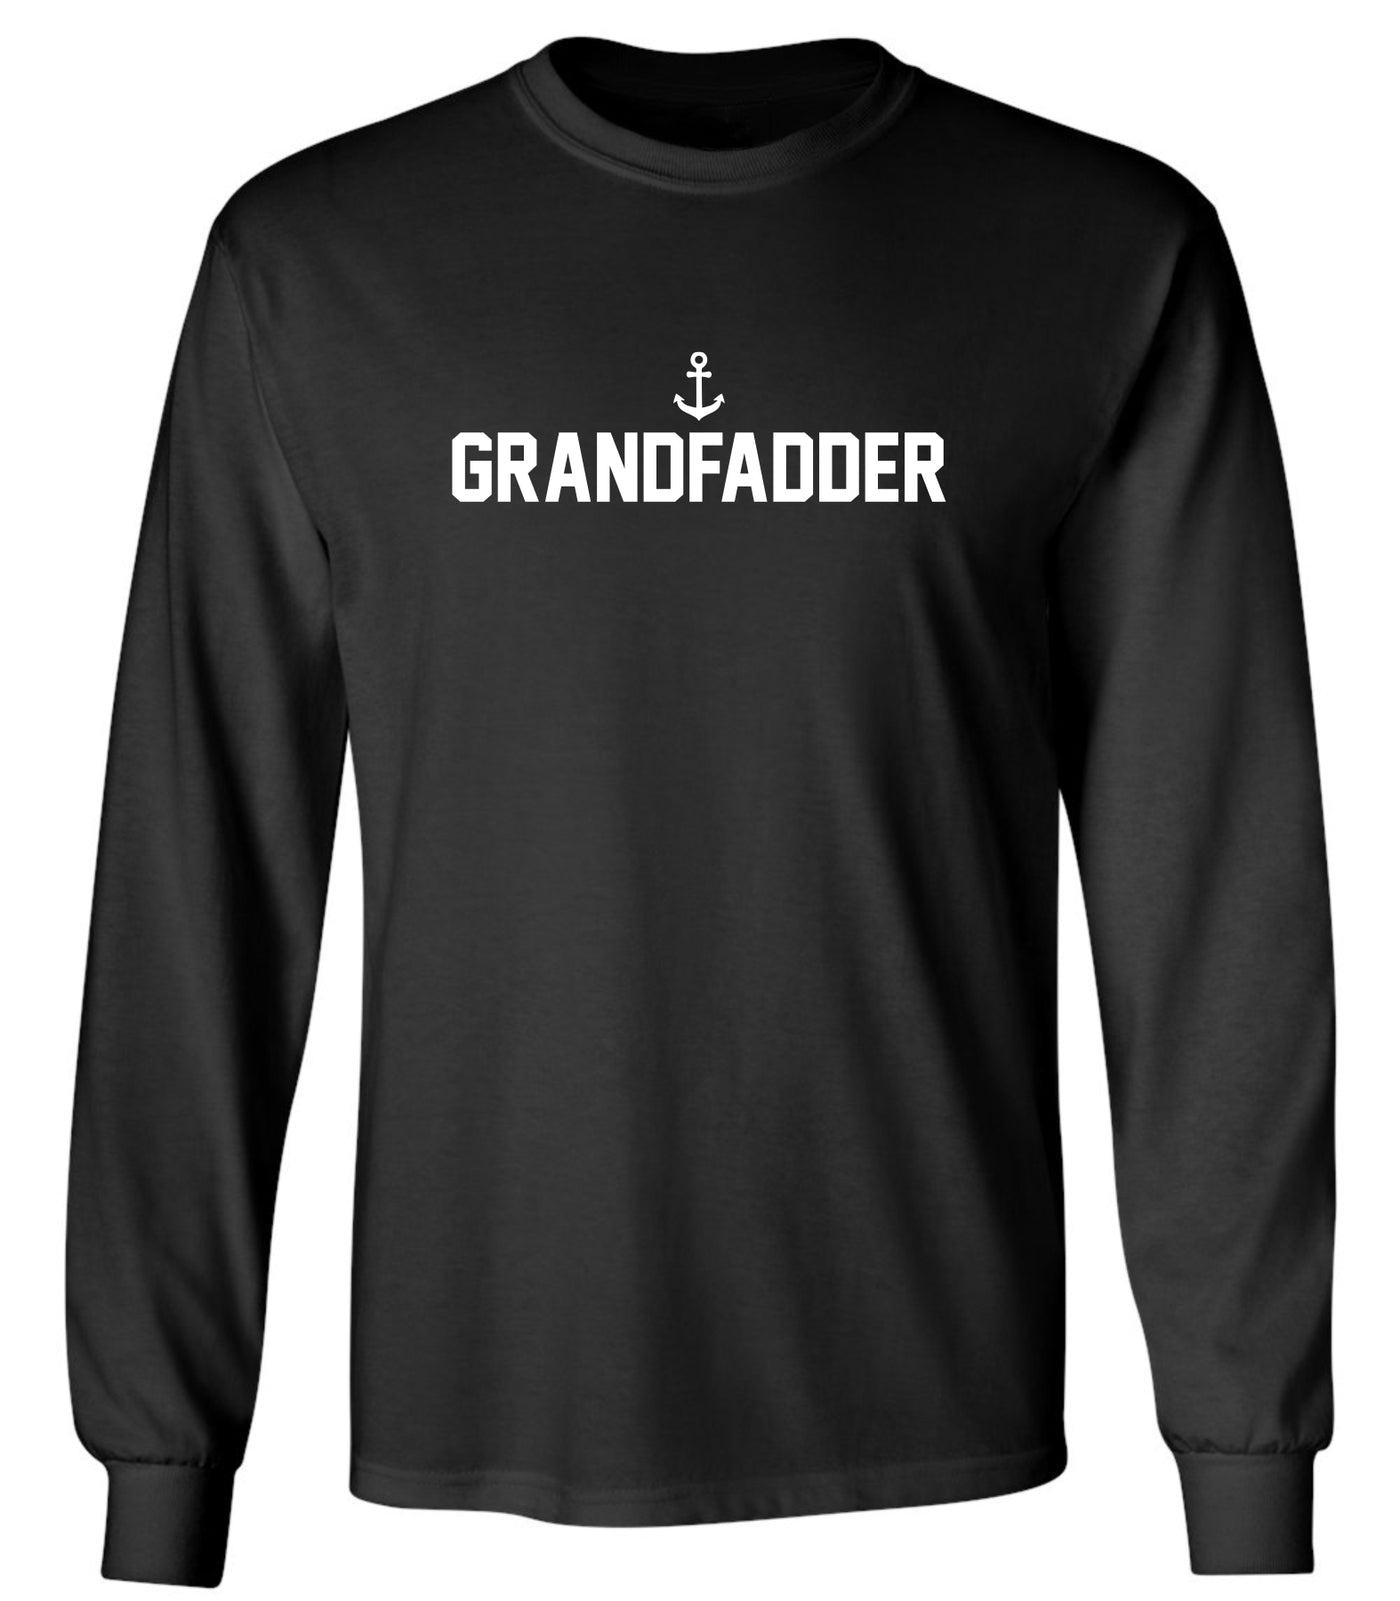 "Grandfadder" Unisex Long Sleeve Shirt